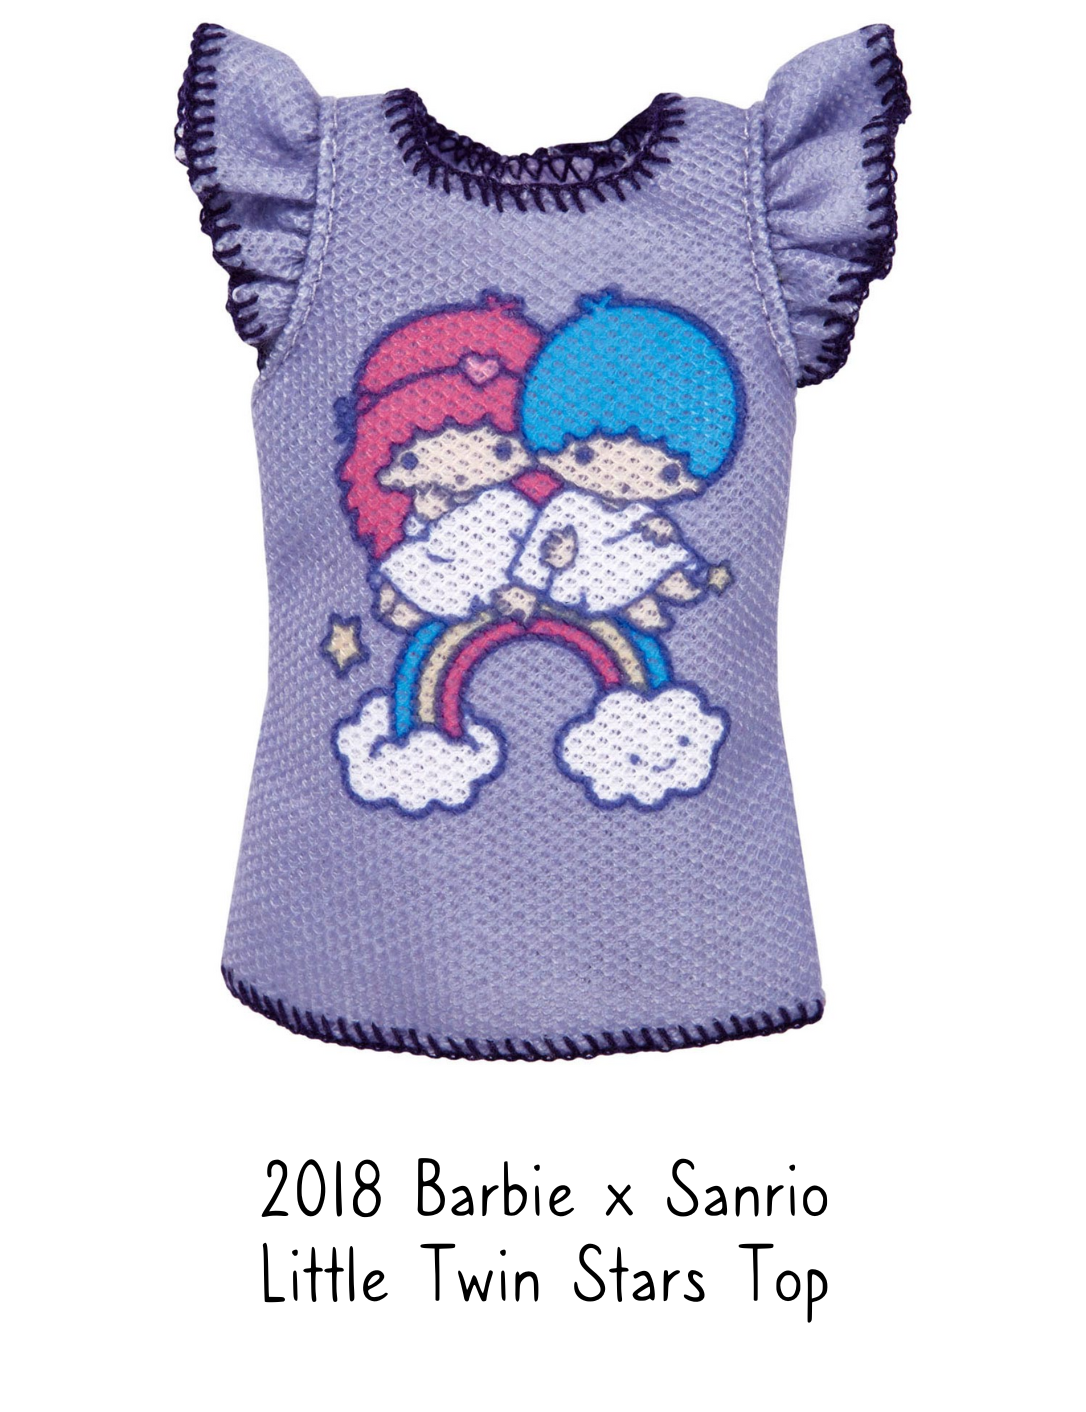 2018 Barbie x Sanrio Little Twin Stars Top